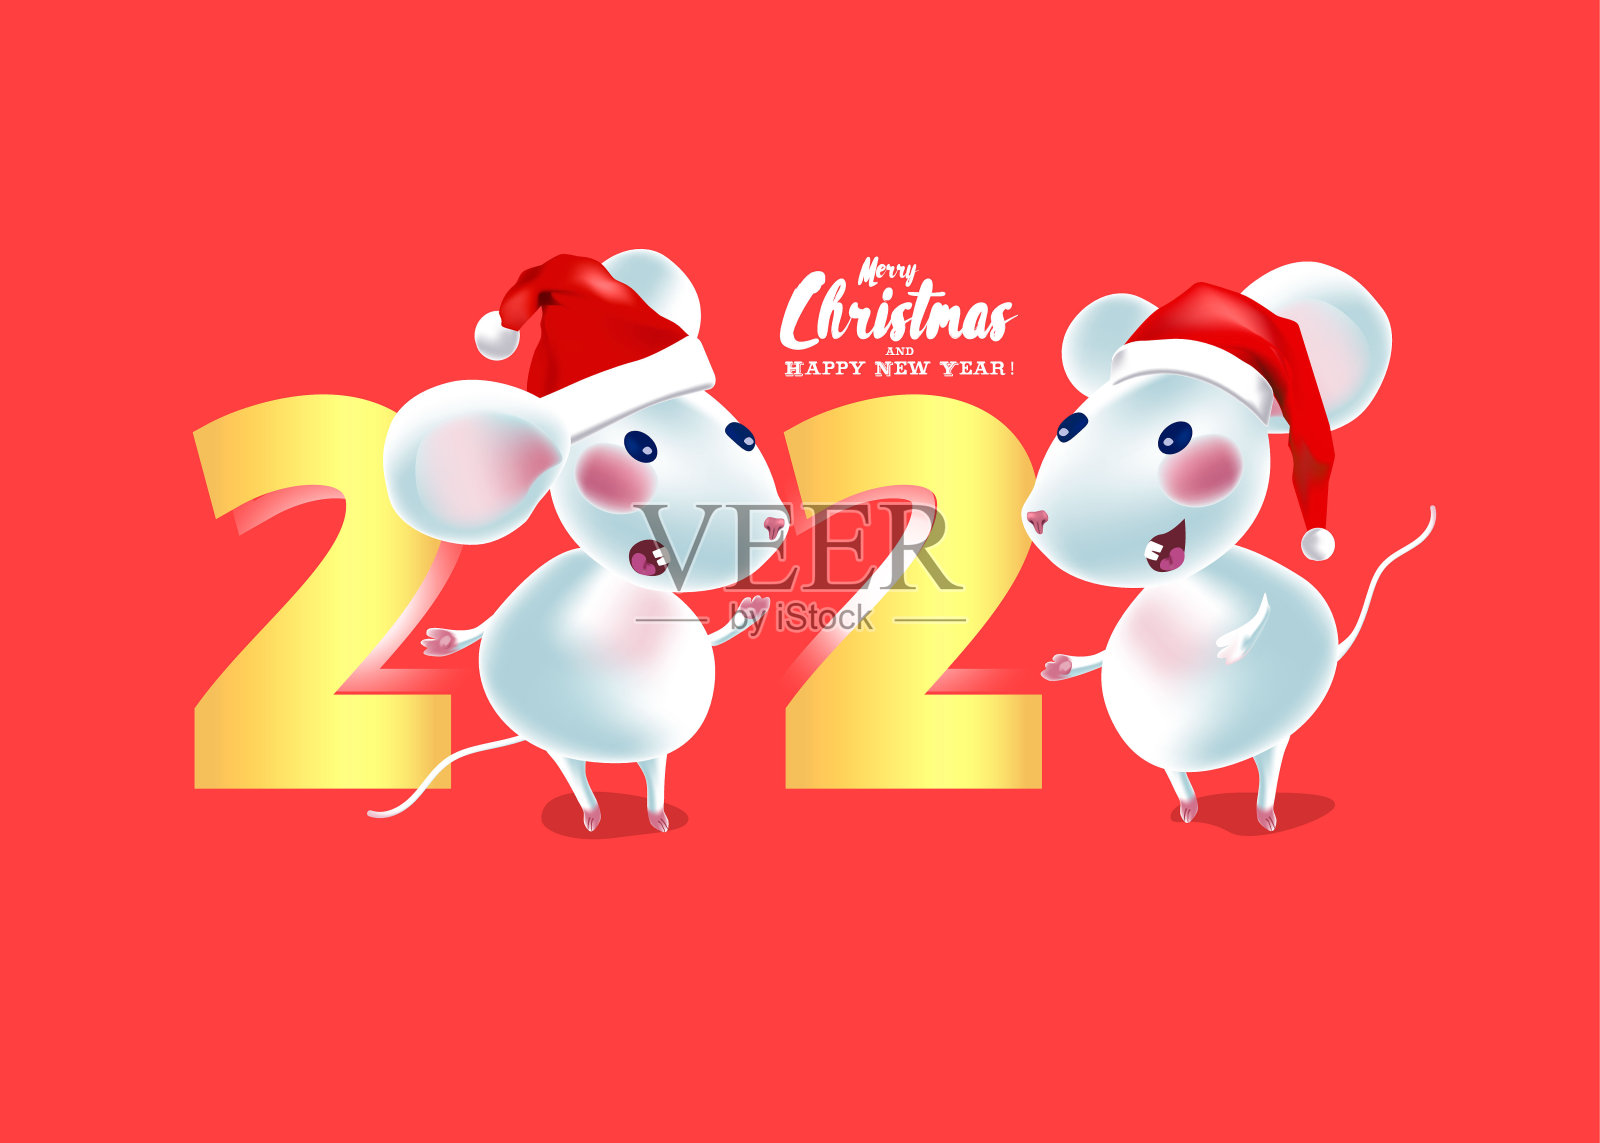 有魅力的鼠标明信片。圣诞节的简约邀请设计。2020年新年标志。插画图片素材